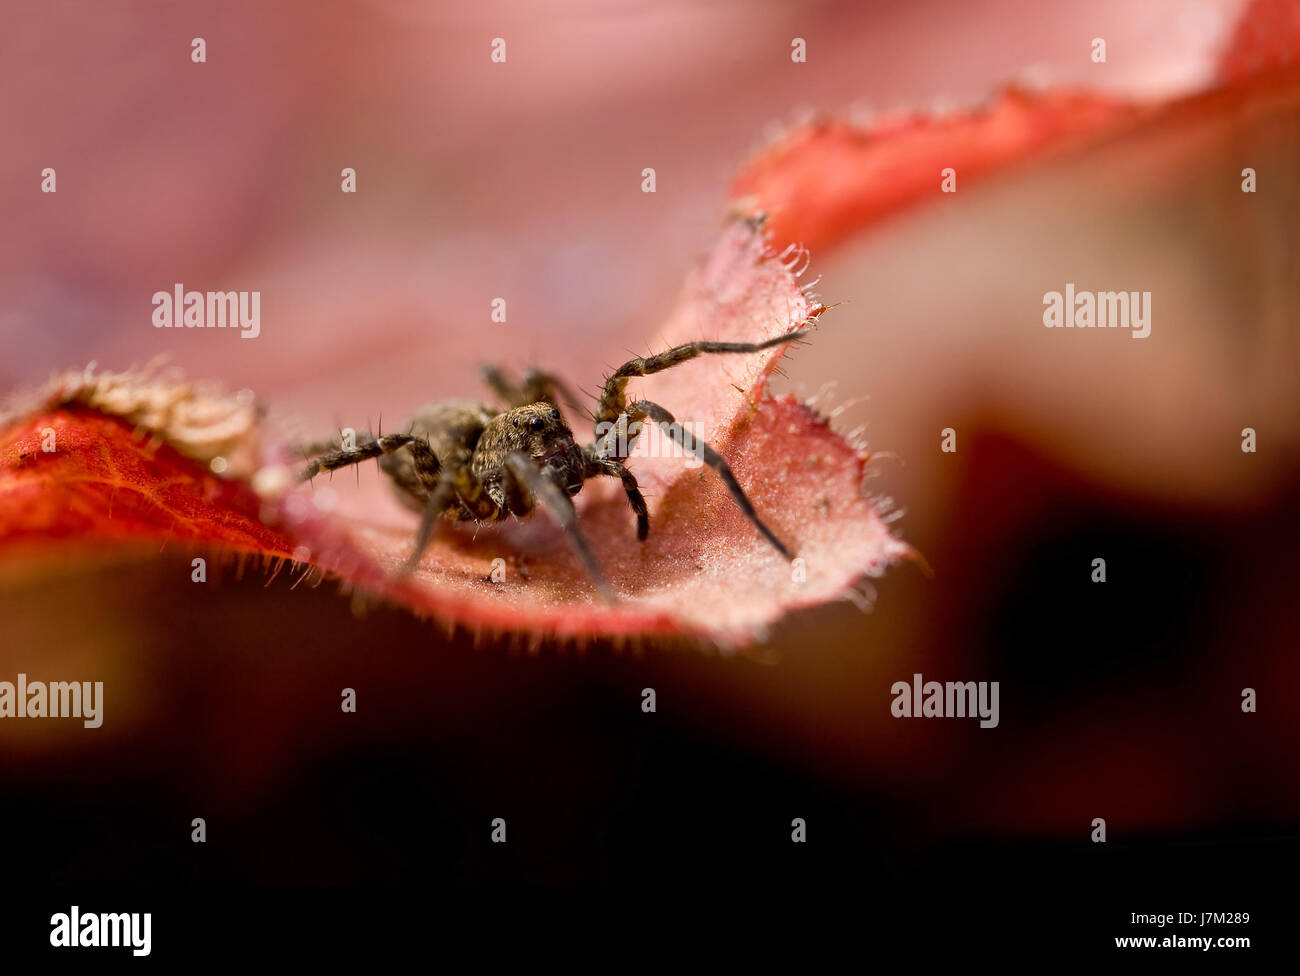 Spinne rote Beine braun bräunlich Brünette Augen Spinne Angst Seite Blatt  rot Stockfotografie - Alamy